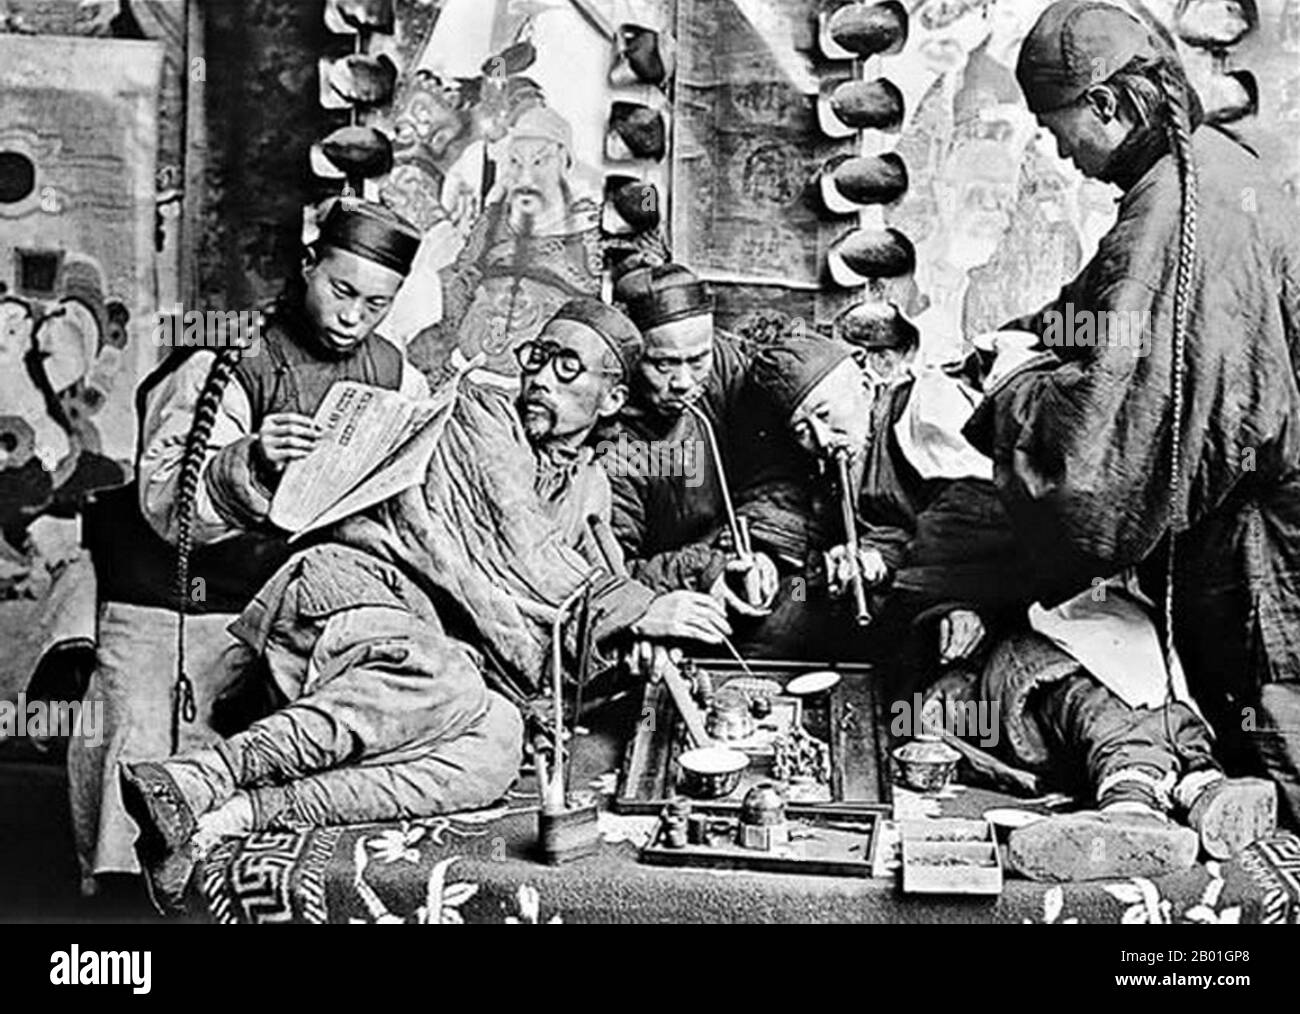 Chine : photo posée d'un groupe de fumeurs d'opium à Canton, carte stéréovisuelle, v. 1900. Une image de studio illustrant une vue occidentale contemporaine de la Chine, y compris la fumée de l'opium et les files d'attente de la dynastie Qing. Banque D'Images